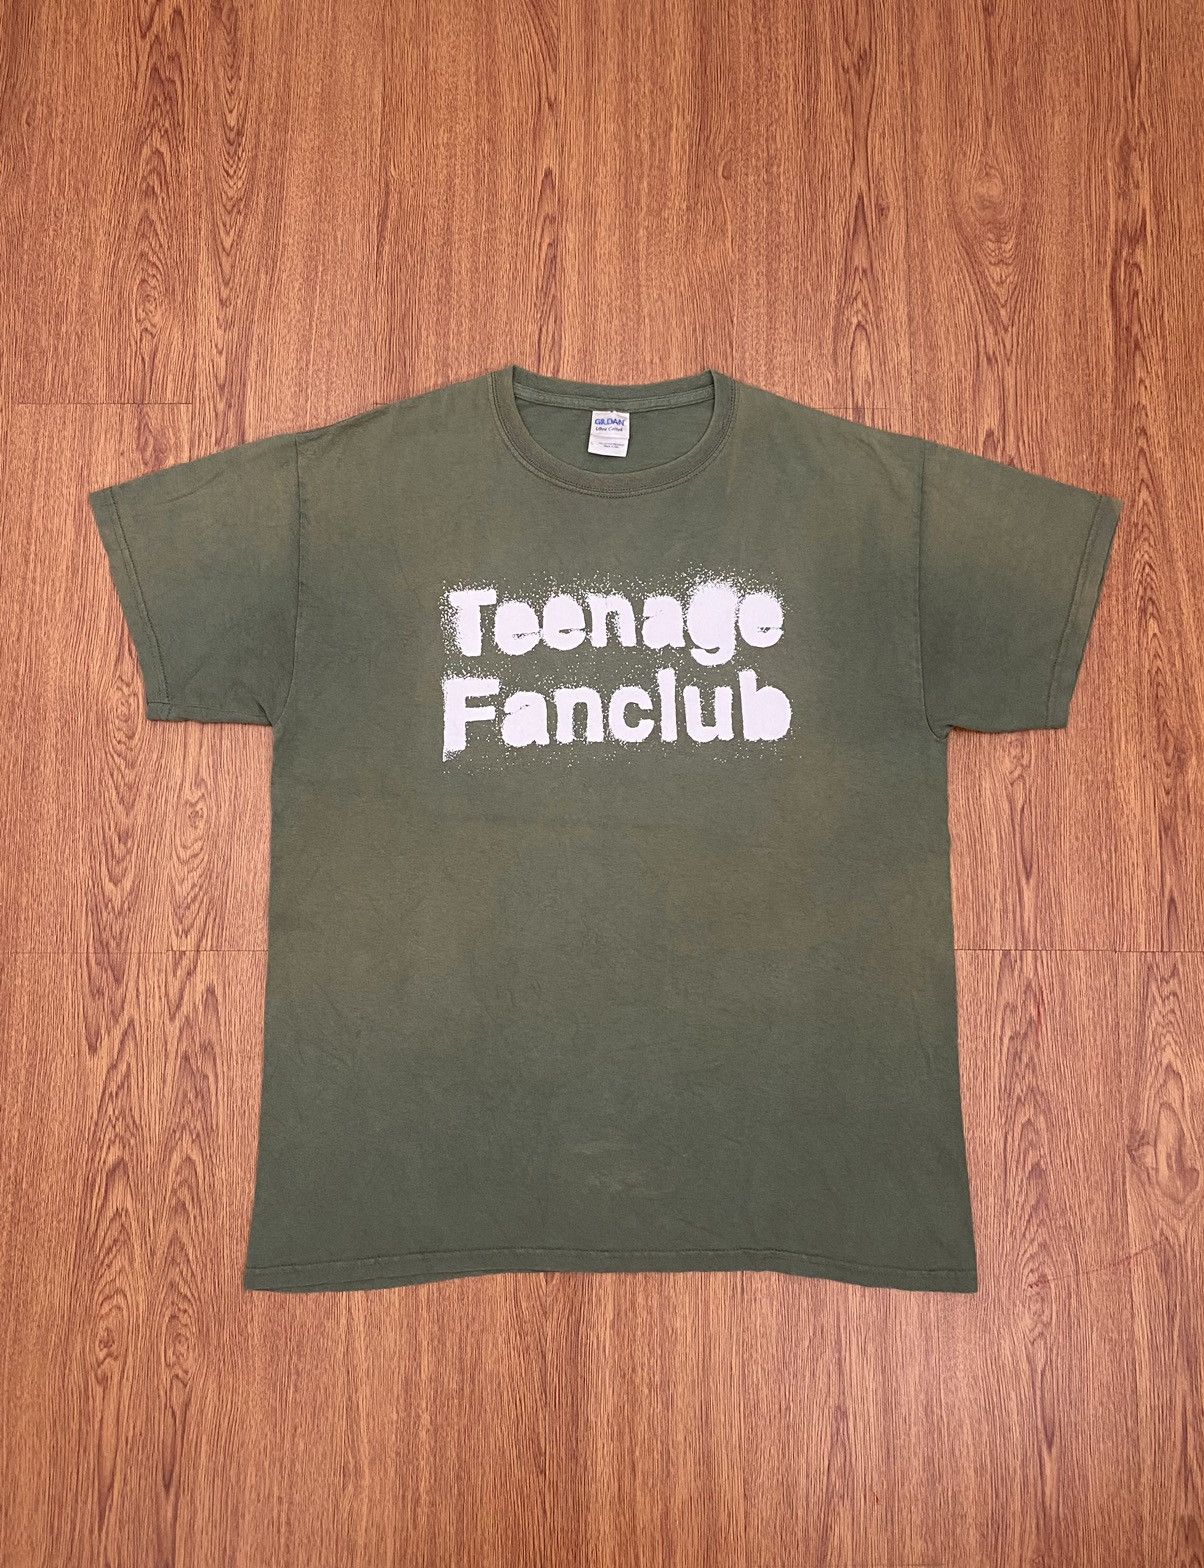 Vintage Teenage fanclub t-shirt | Grailed